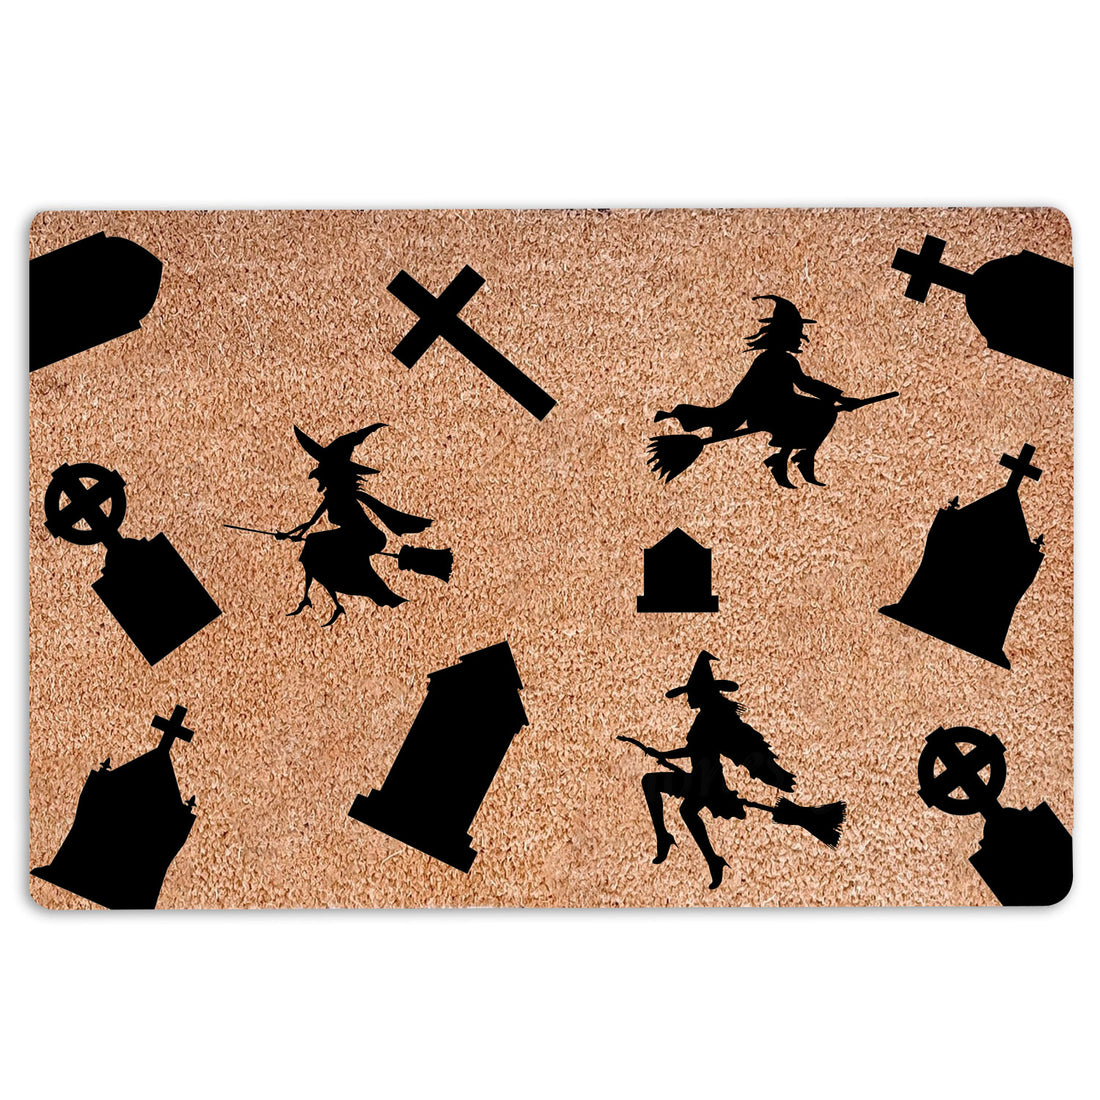 Ohaprints-Doormat-Outdoor-Indoor-Halloween-Black-Witches-Rubber-Door-Mat-22-18'' x 30''